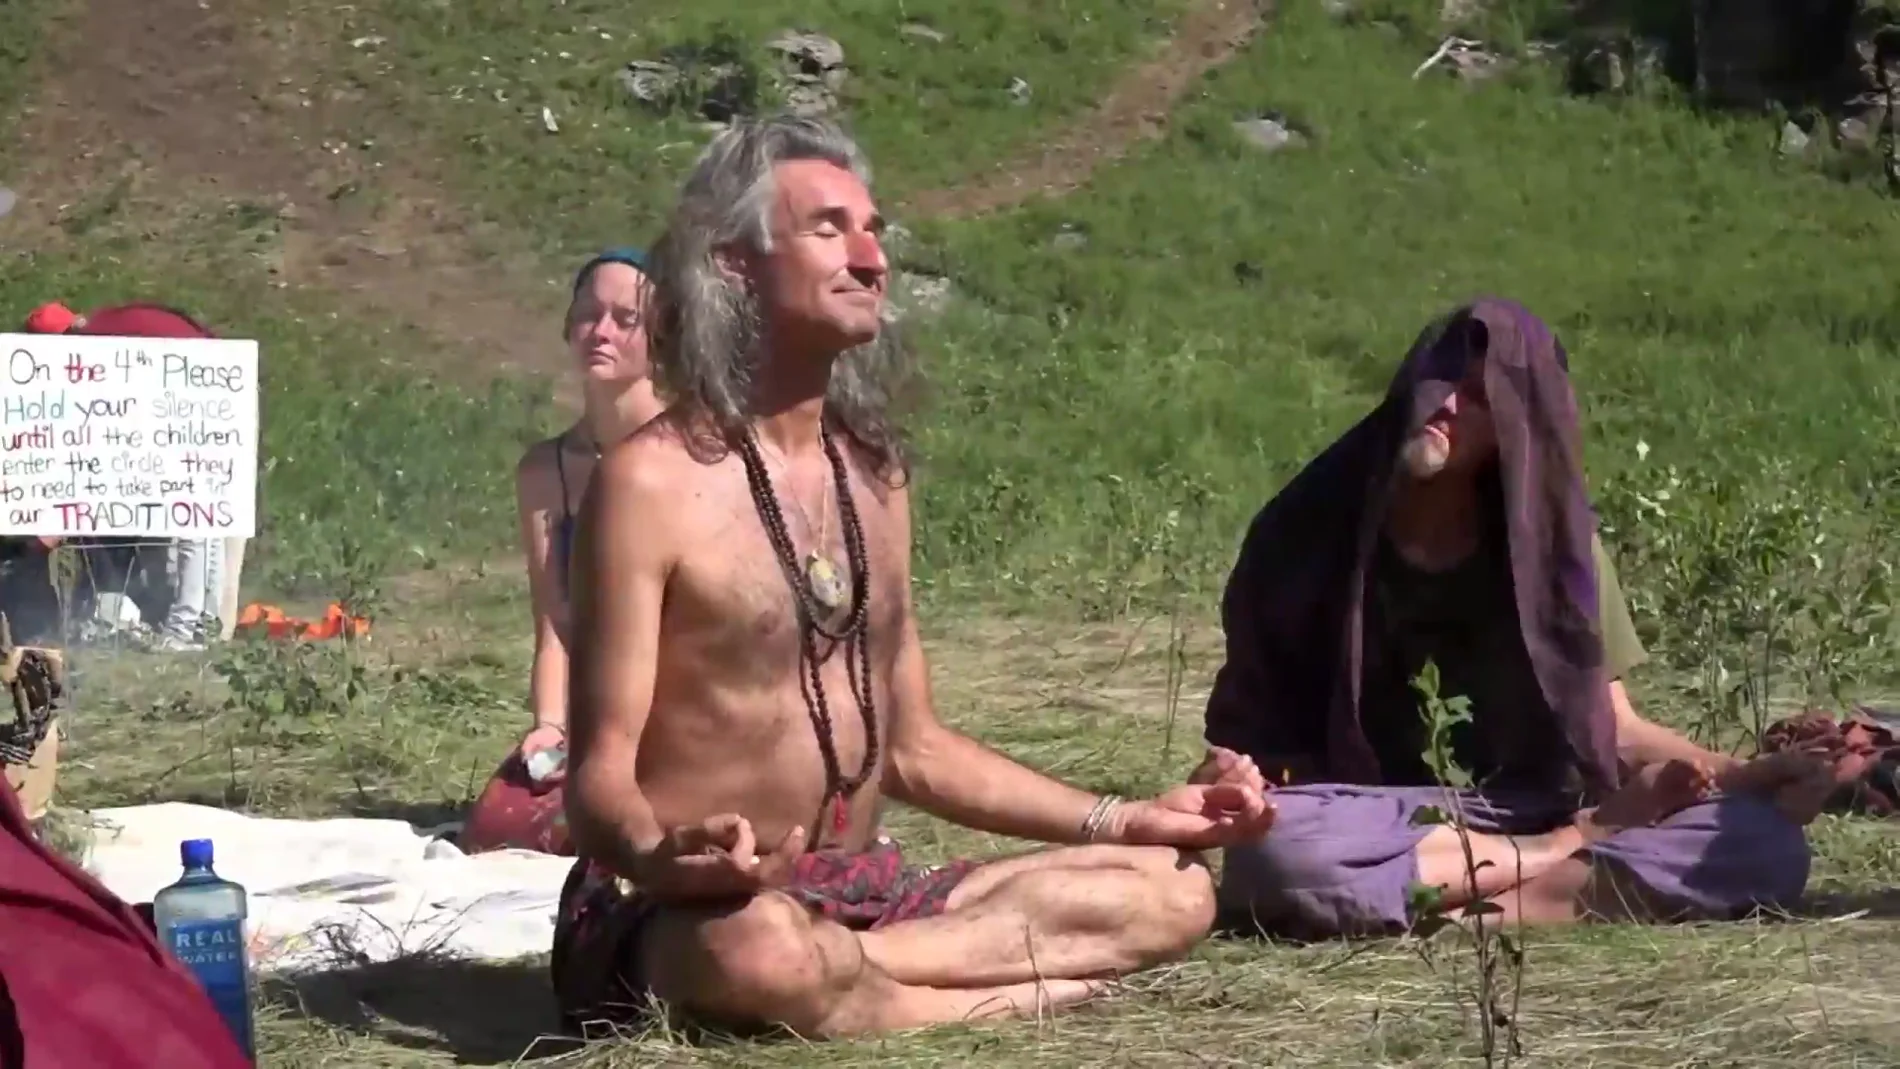 El Gobierno de La Rioja estudia desalojar un campamento nudista hippie de unas 200 personas